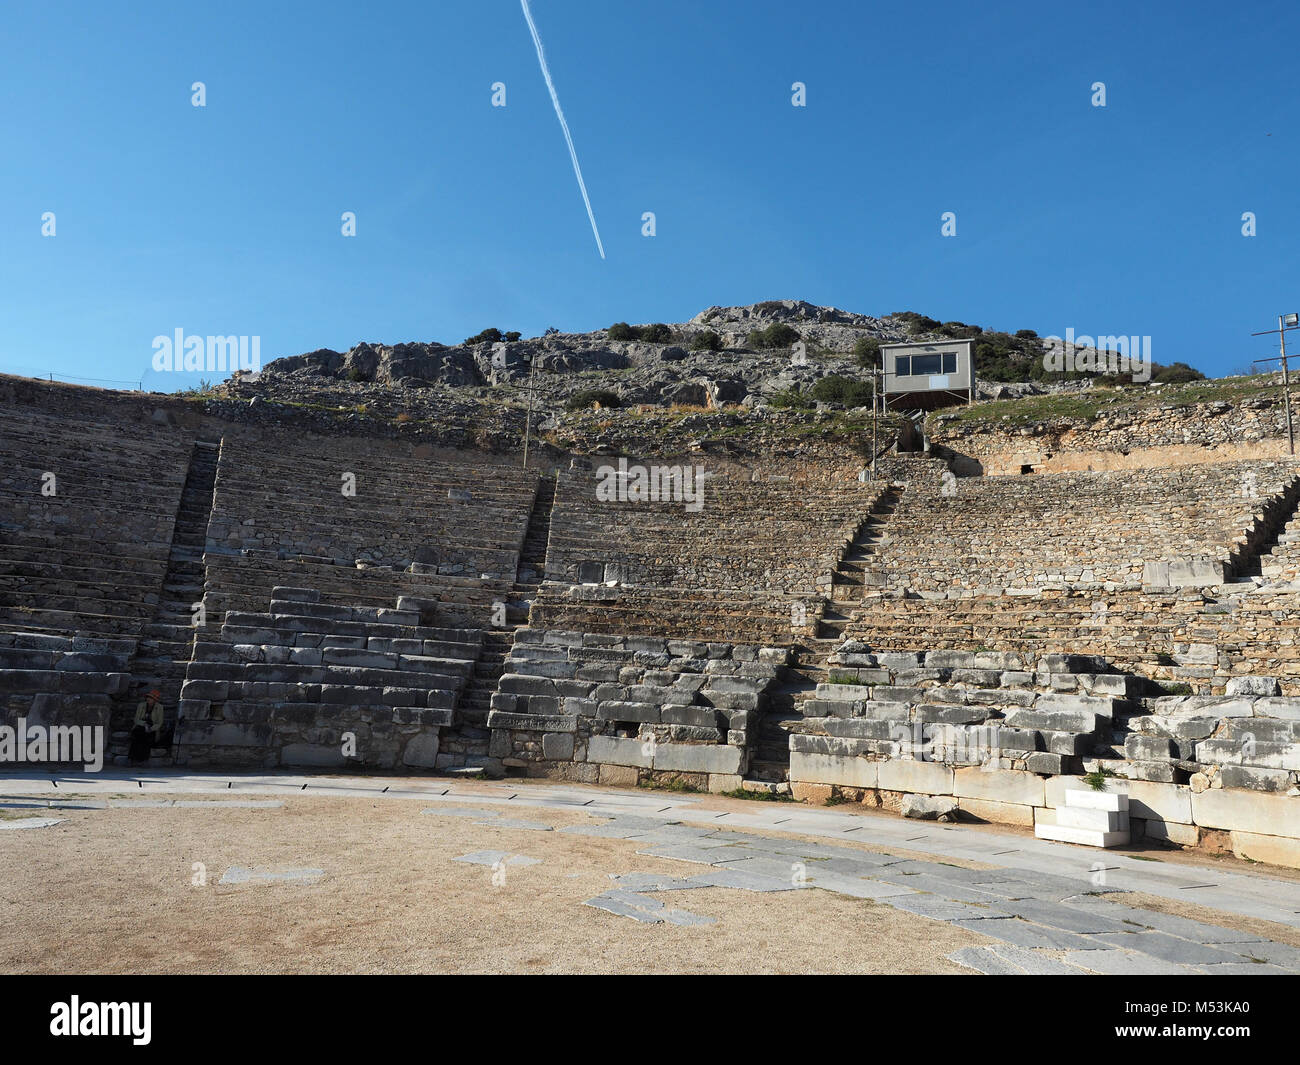 Ruines de l'amphithéâtre antique de Philippes près de Kavala, Grèce Banque D'Images